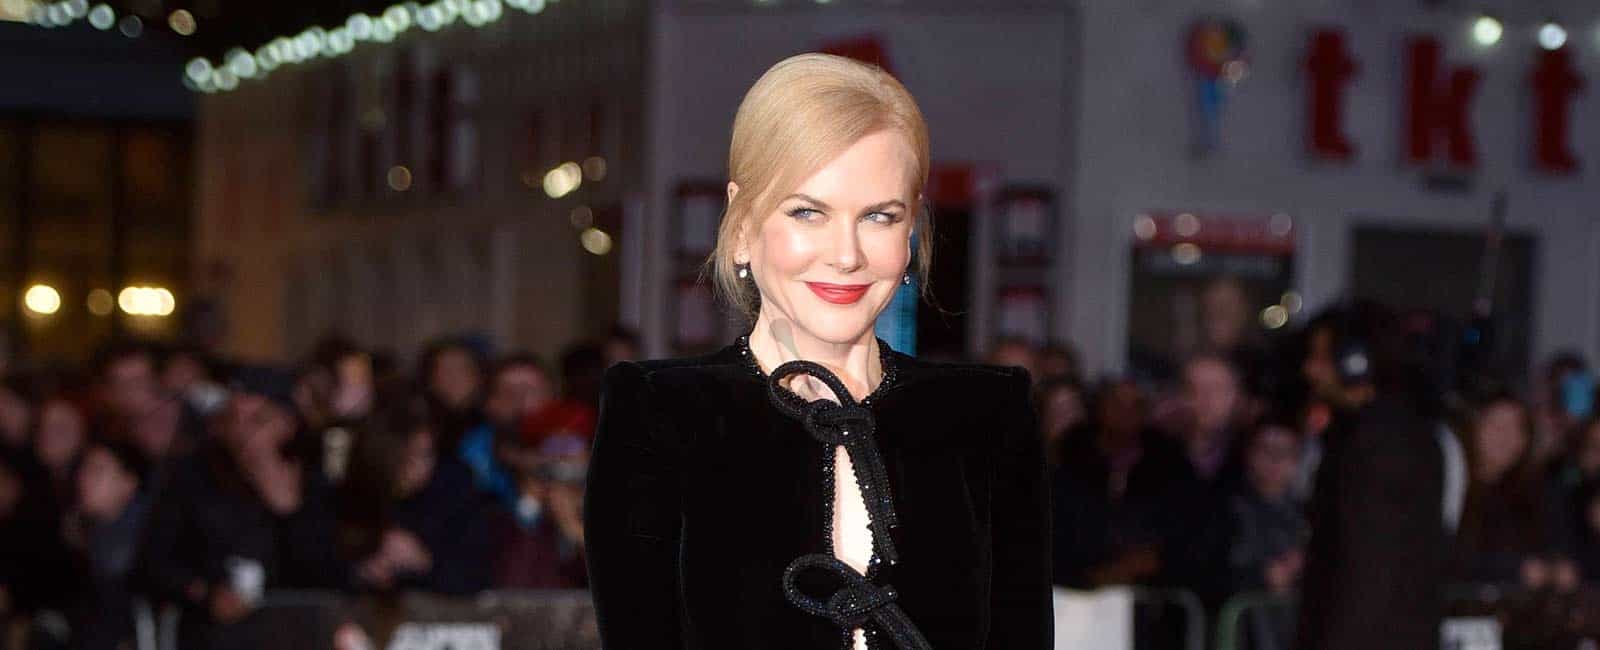 Nicole Kidman, el glamour de Hollywood, camino a los Oscar